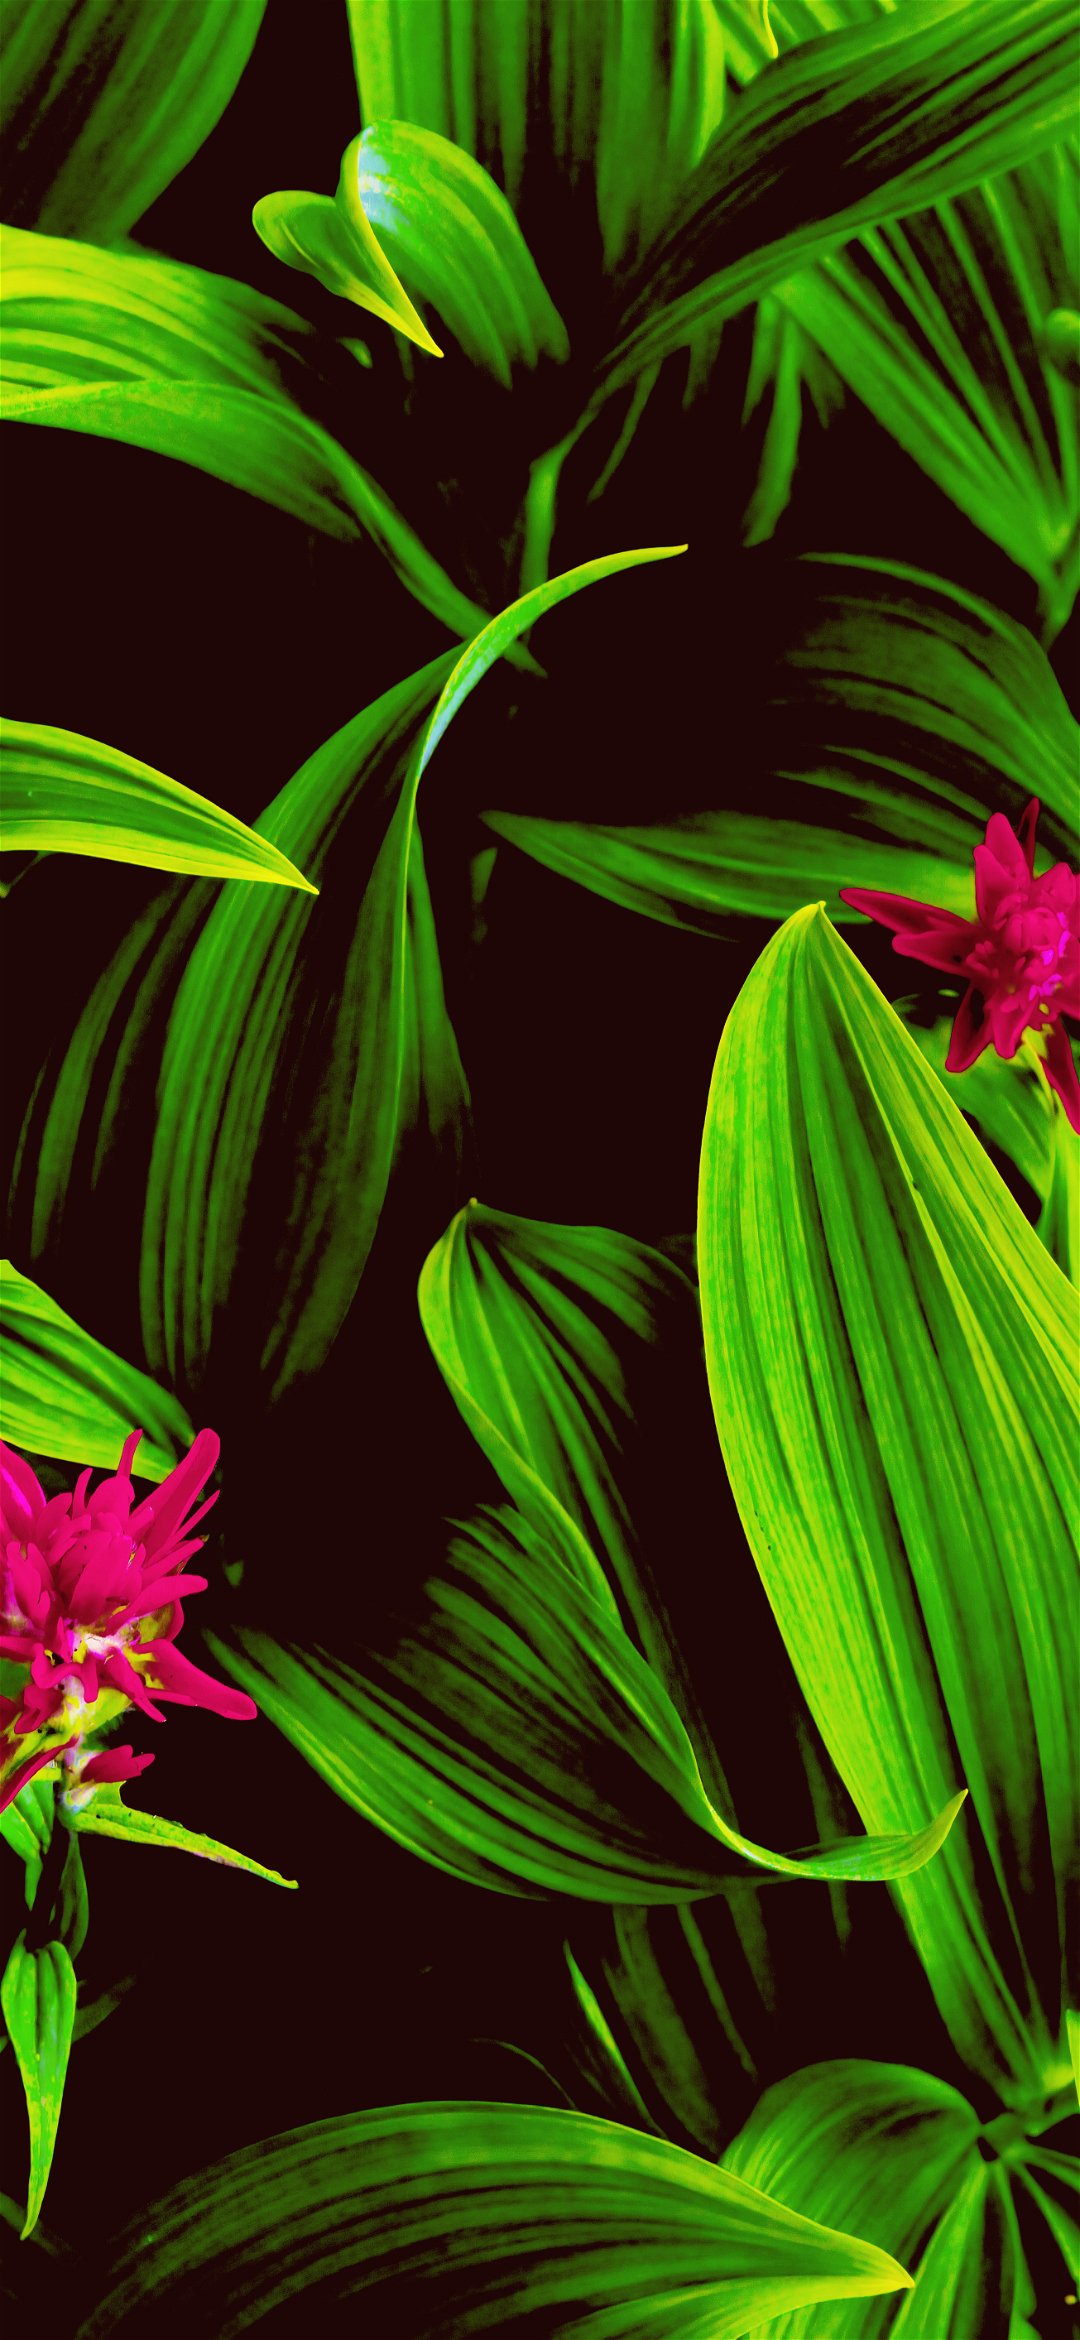 خلفية أوراق نبات الزينة الخضراء اليانعة